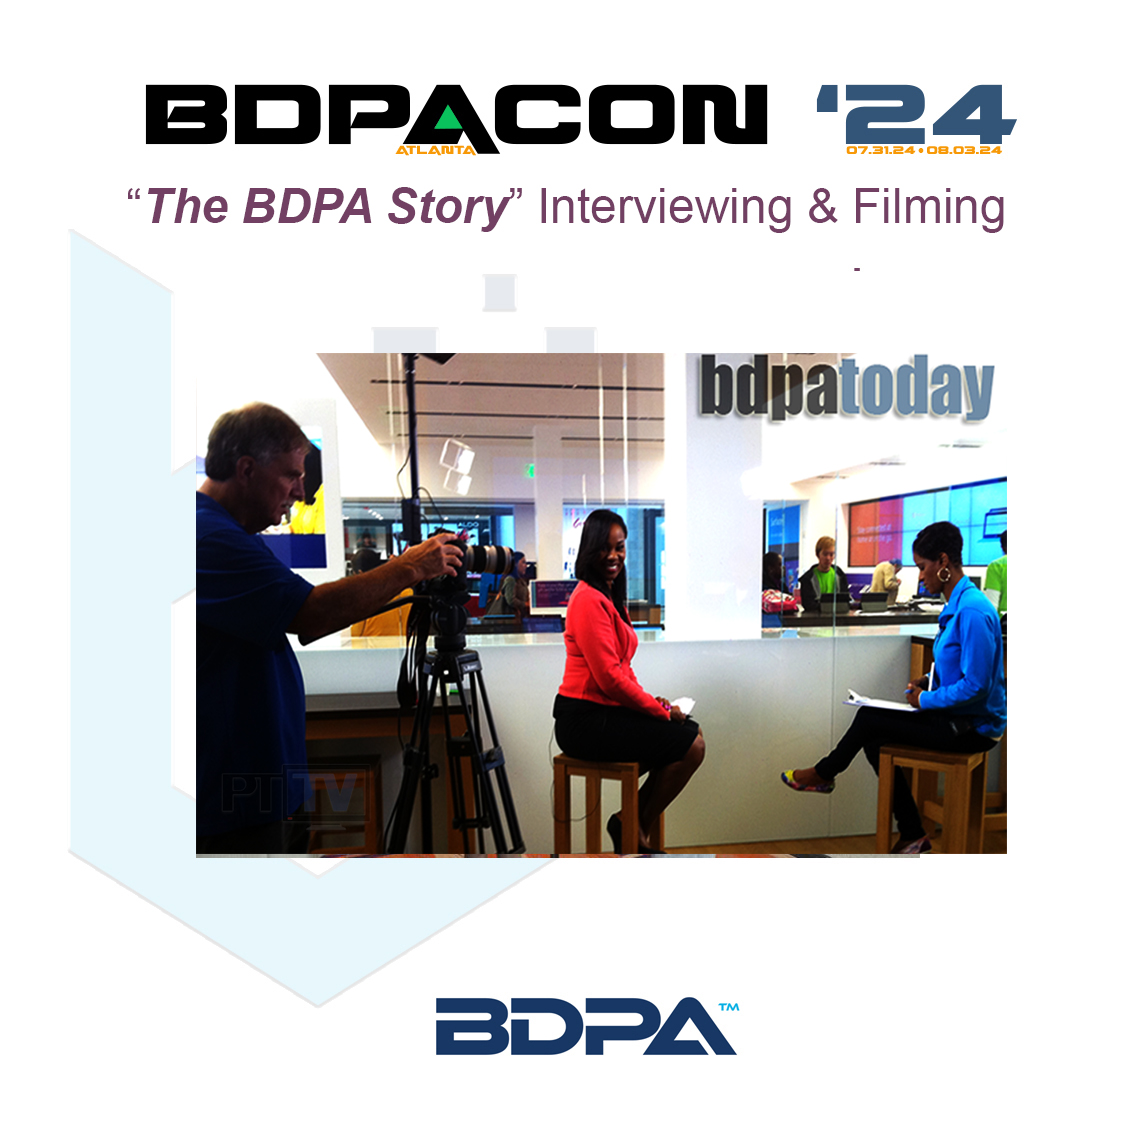 BDPA-TV and PTTV Interviews